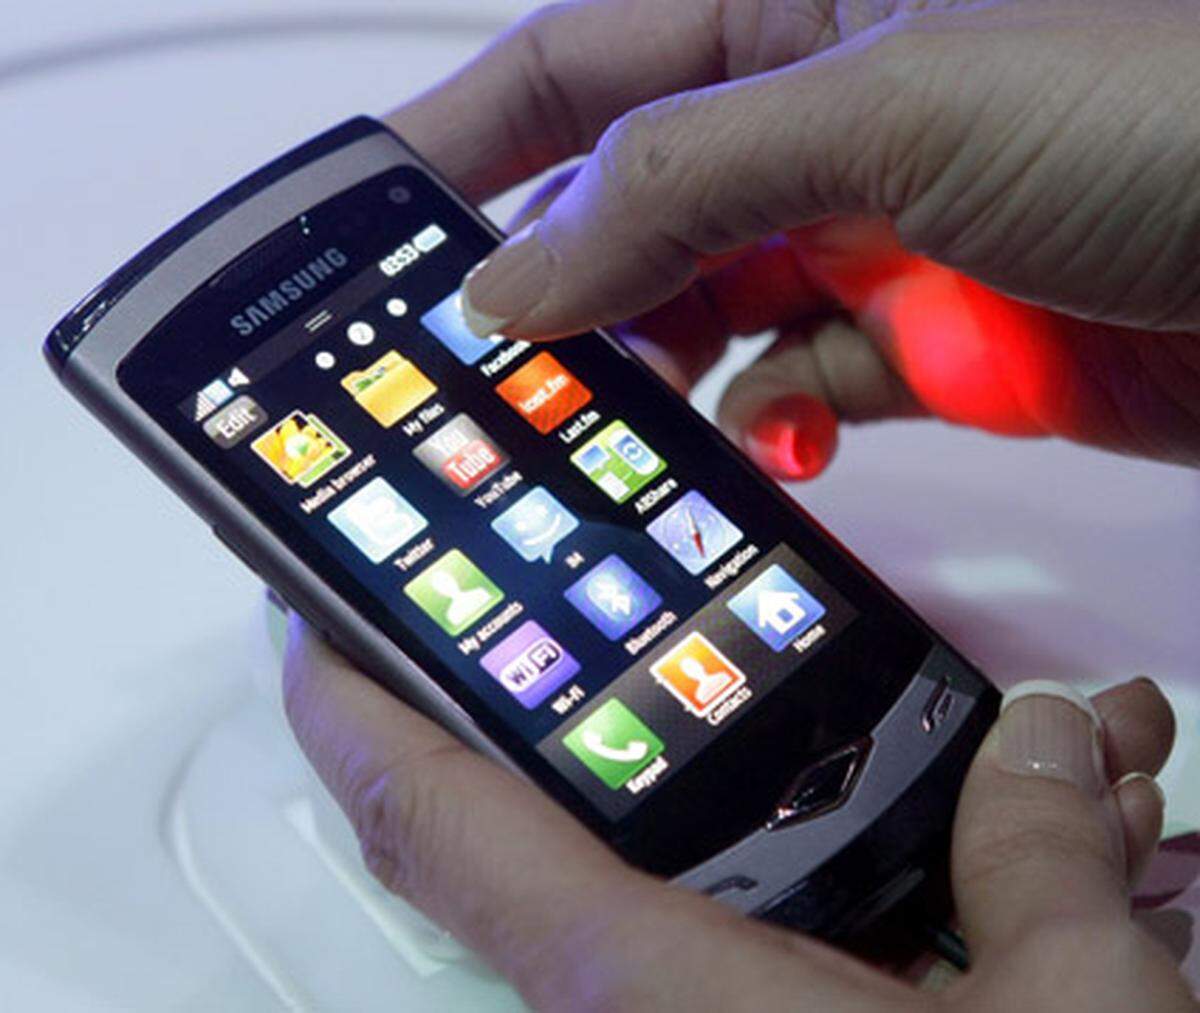 Das Samsung Wave läuft mit einem pfeilschnellen 1-GHz-Prozessor und bietet ein 3,3-Zoll-Display. Dank Super-AMOLED-Technik soll es auch im Sonnenlicht gut ablesbar sein. Nach Herstellerangaben wird das Smartphone im April auf den Markt kommen.